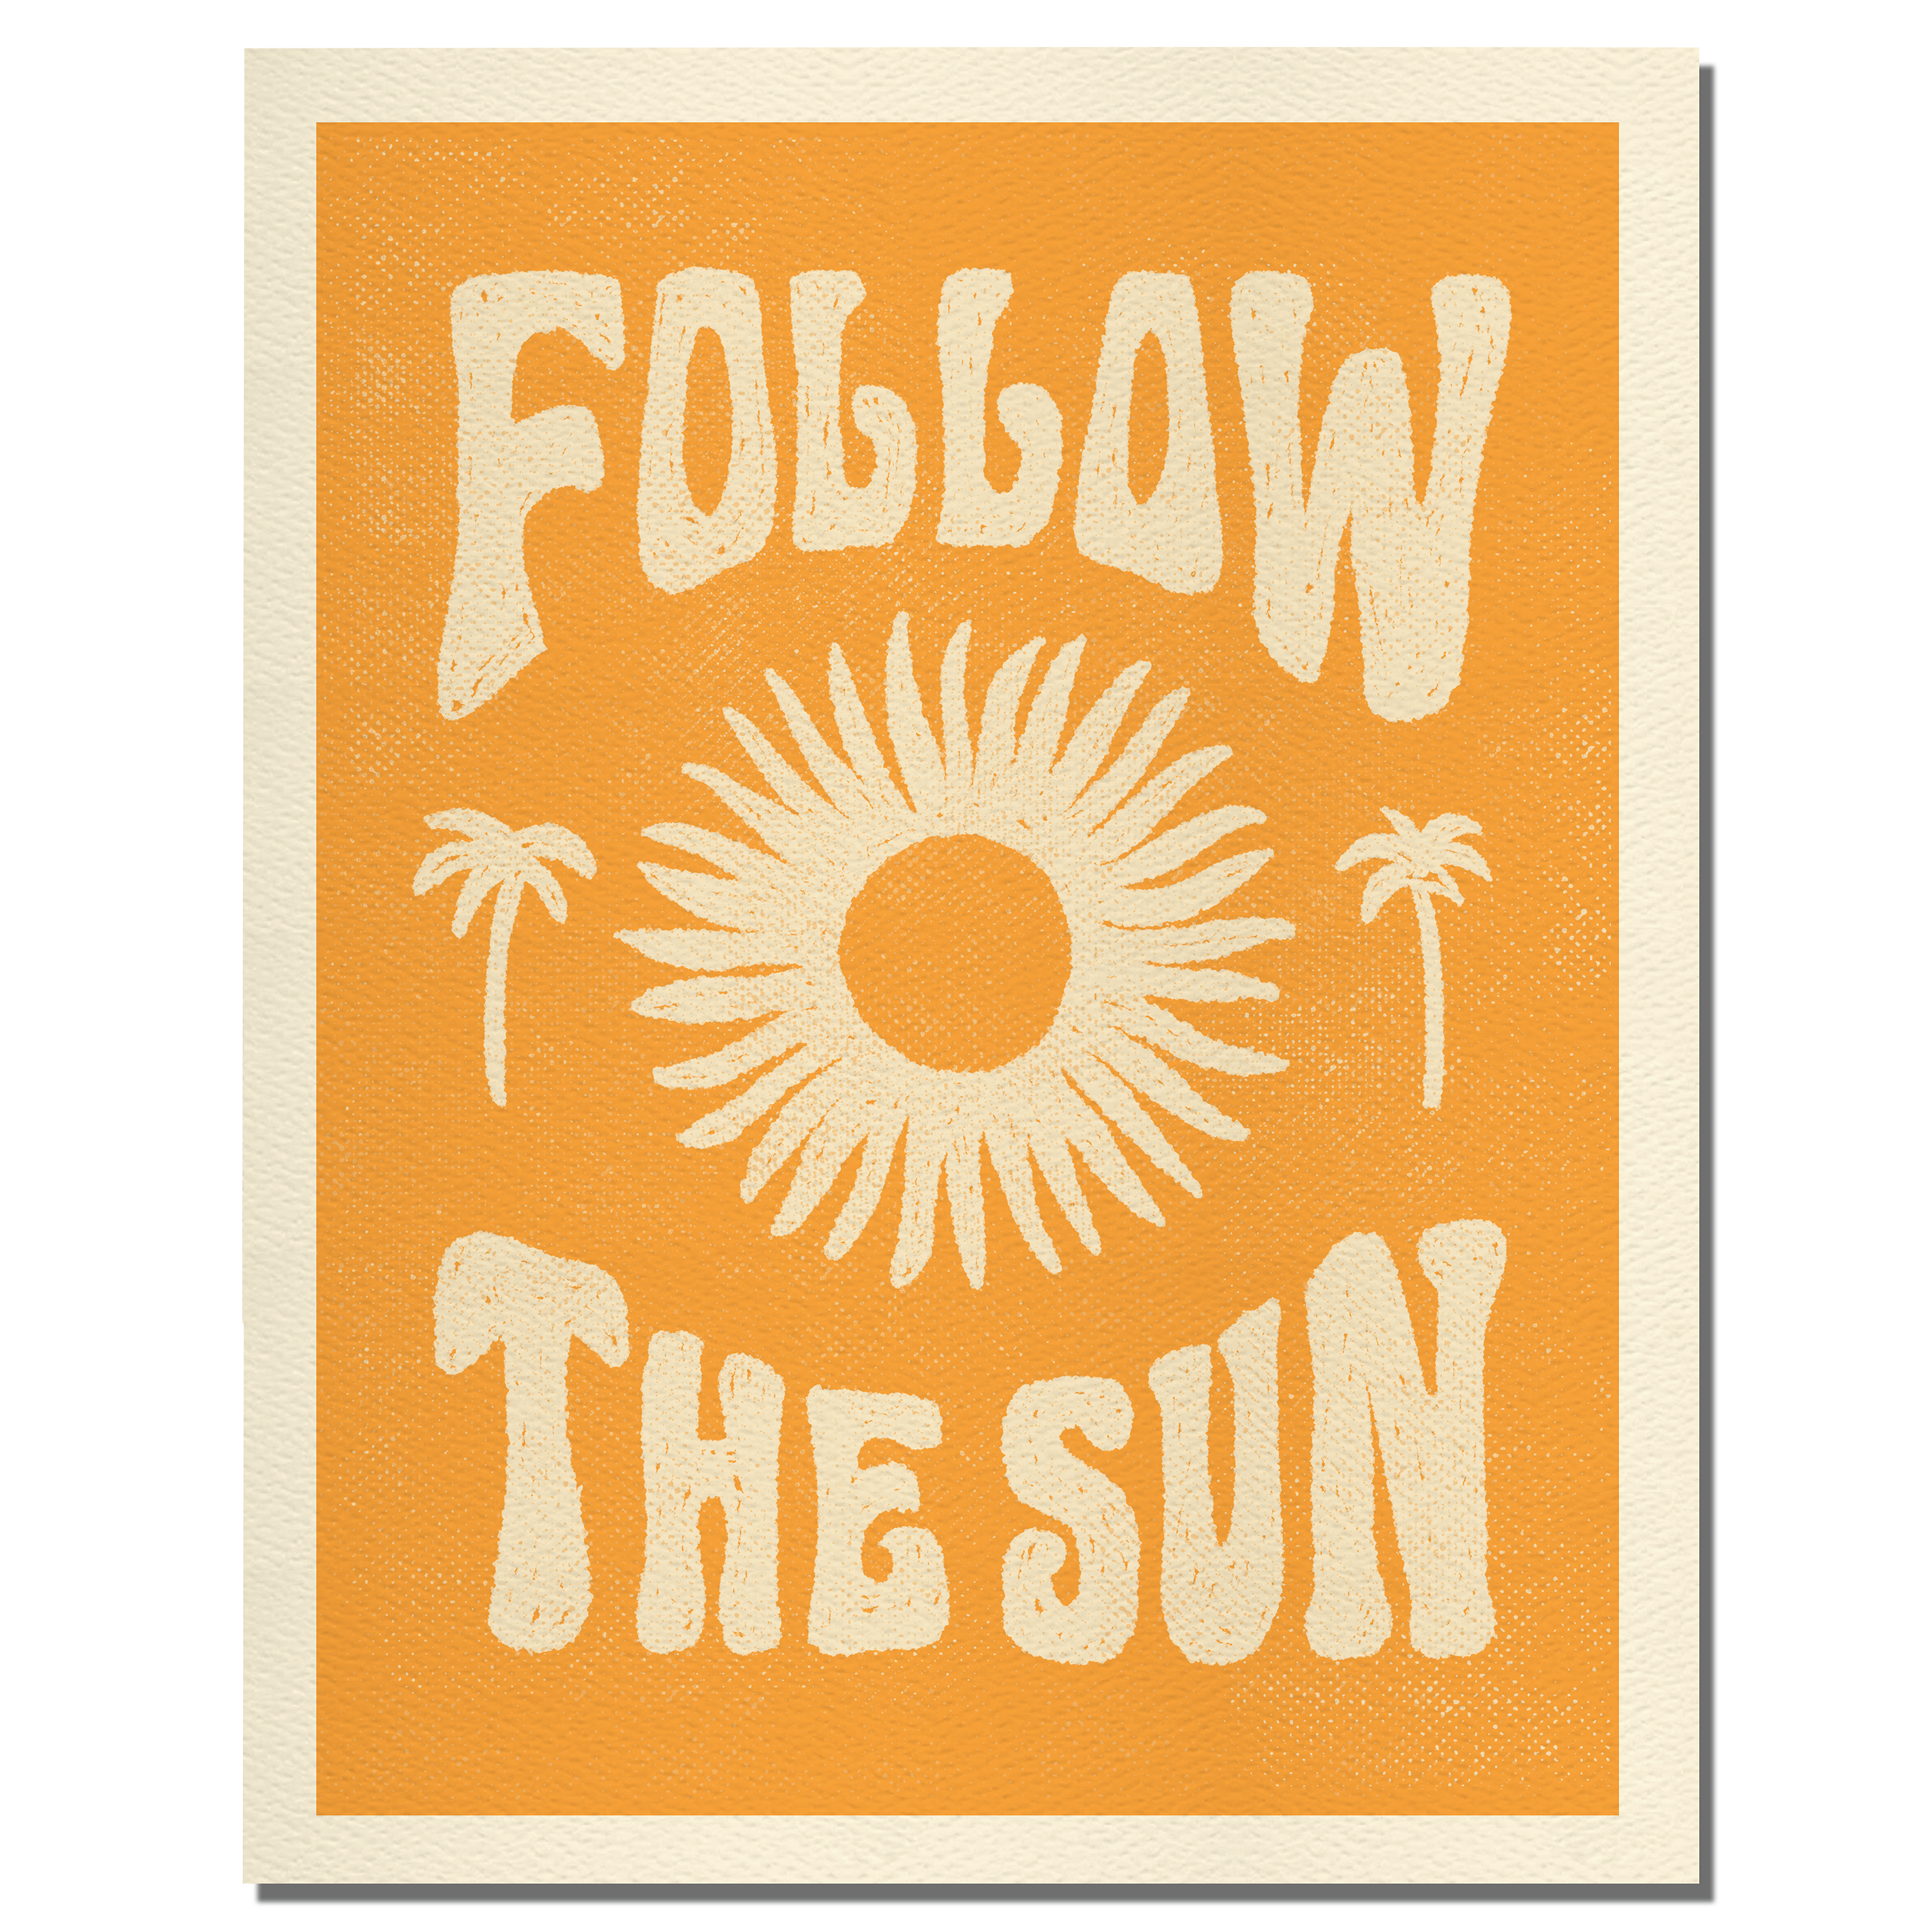 Follow the sun - Summer art print 11x14"